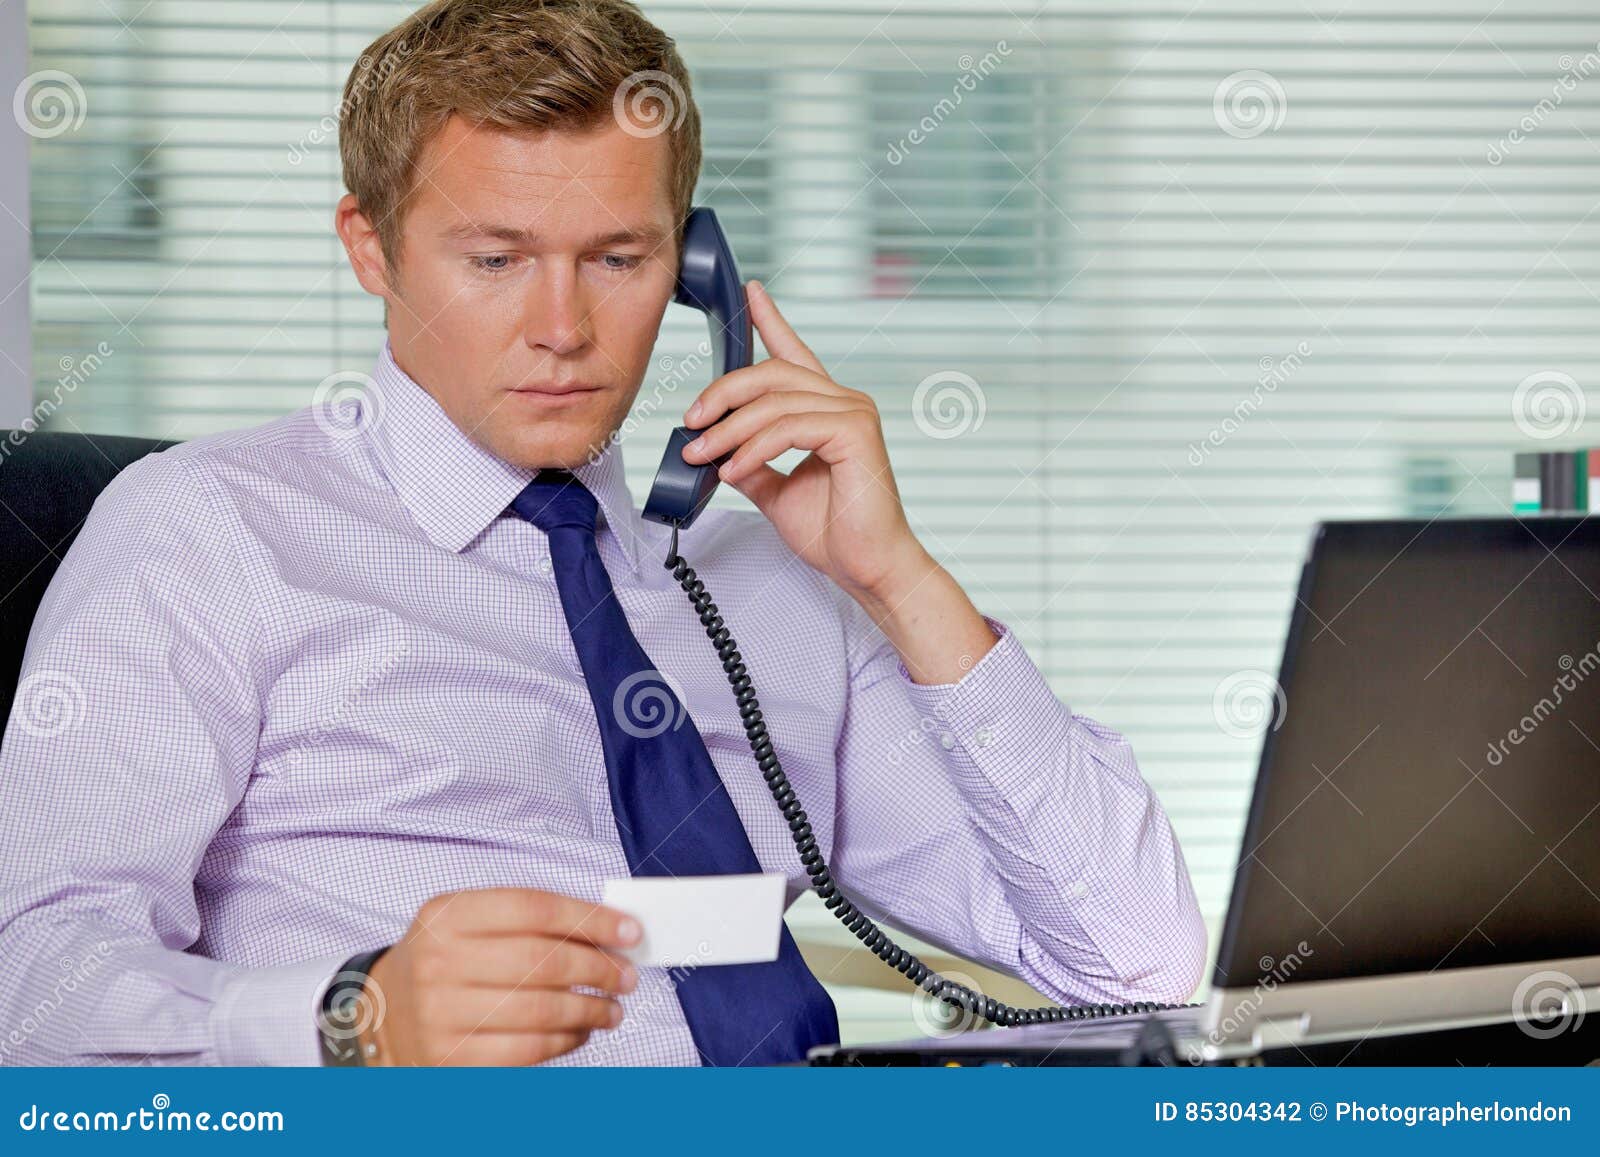 Позвонить брокеру. Человек в офисе с телефоном. Мужчина офис телефон. Бизнесмен с телефоном. Бизнесем разговаривает по телефону.